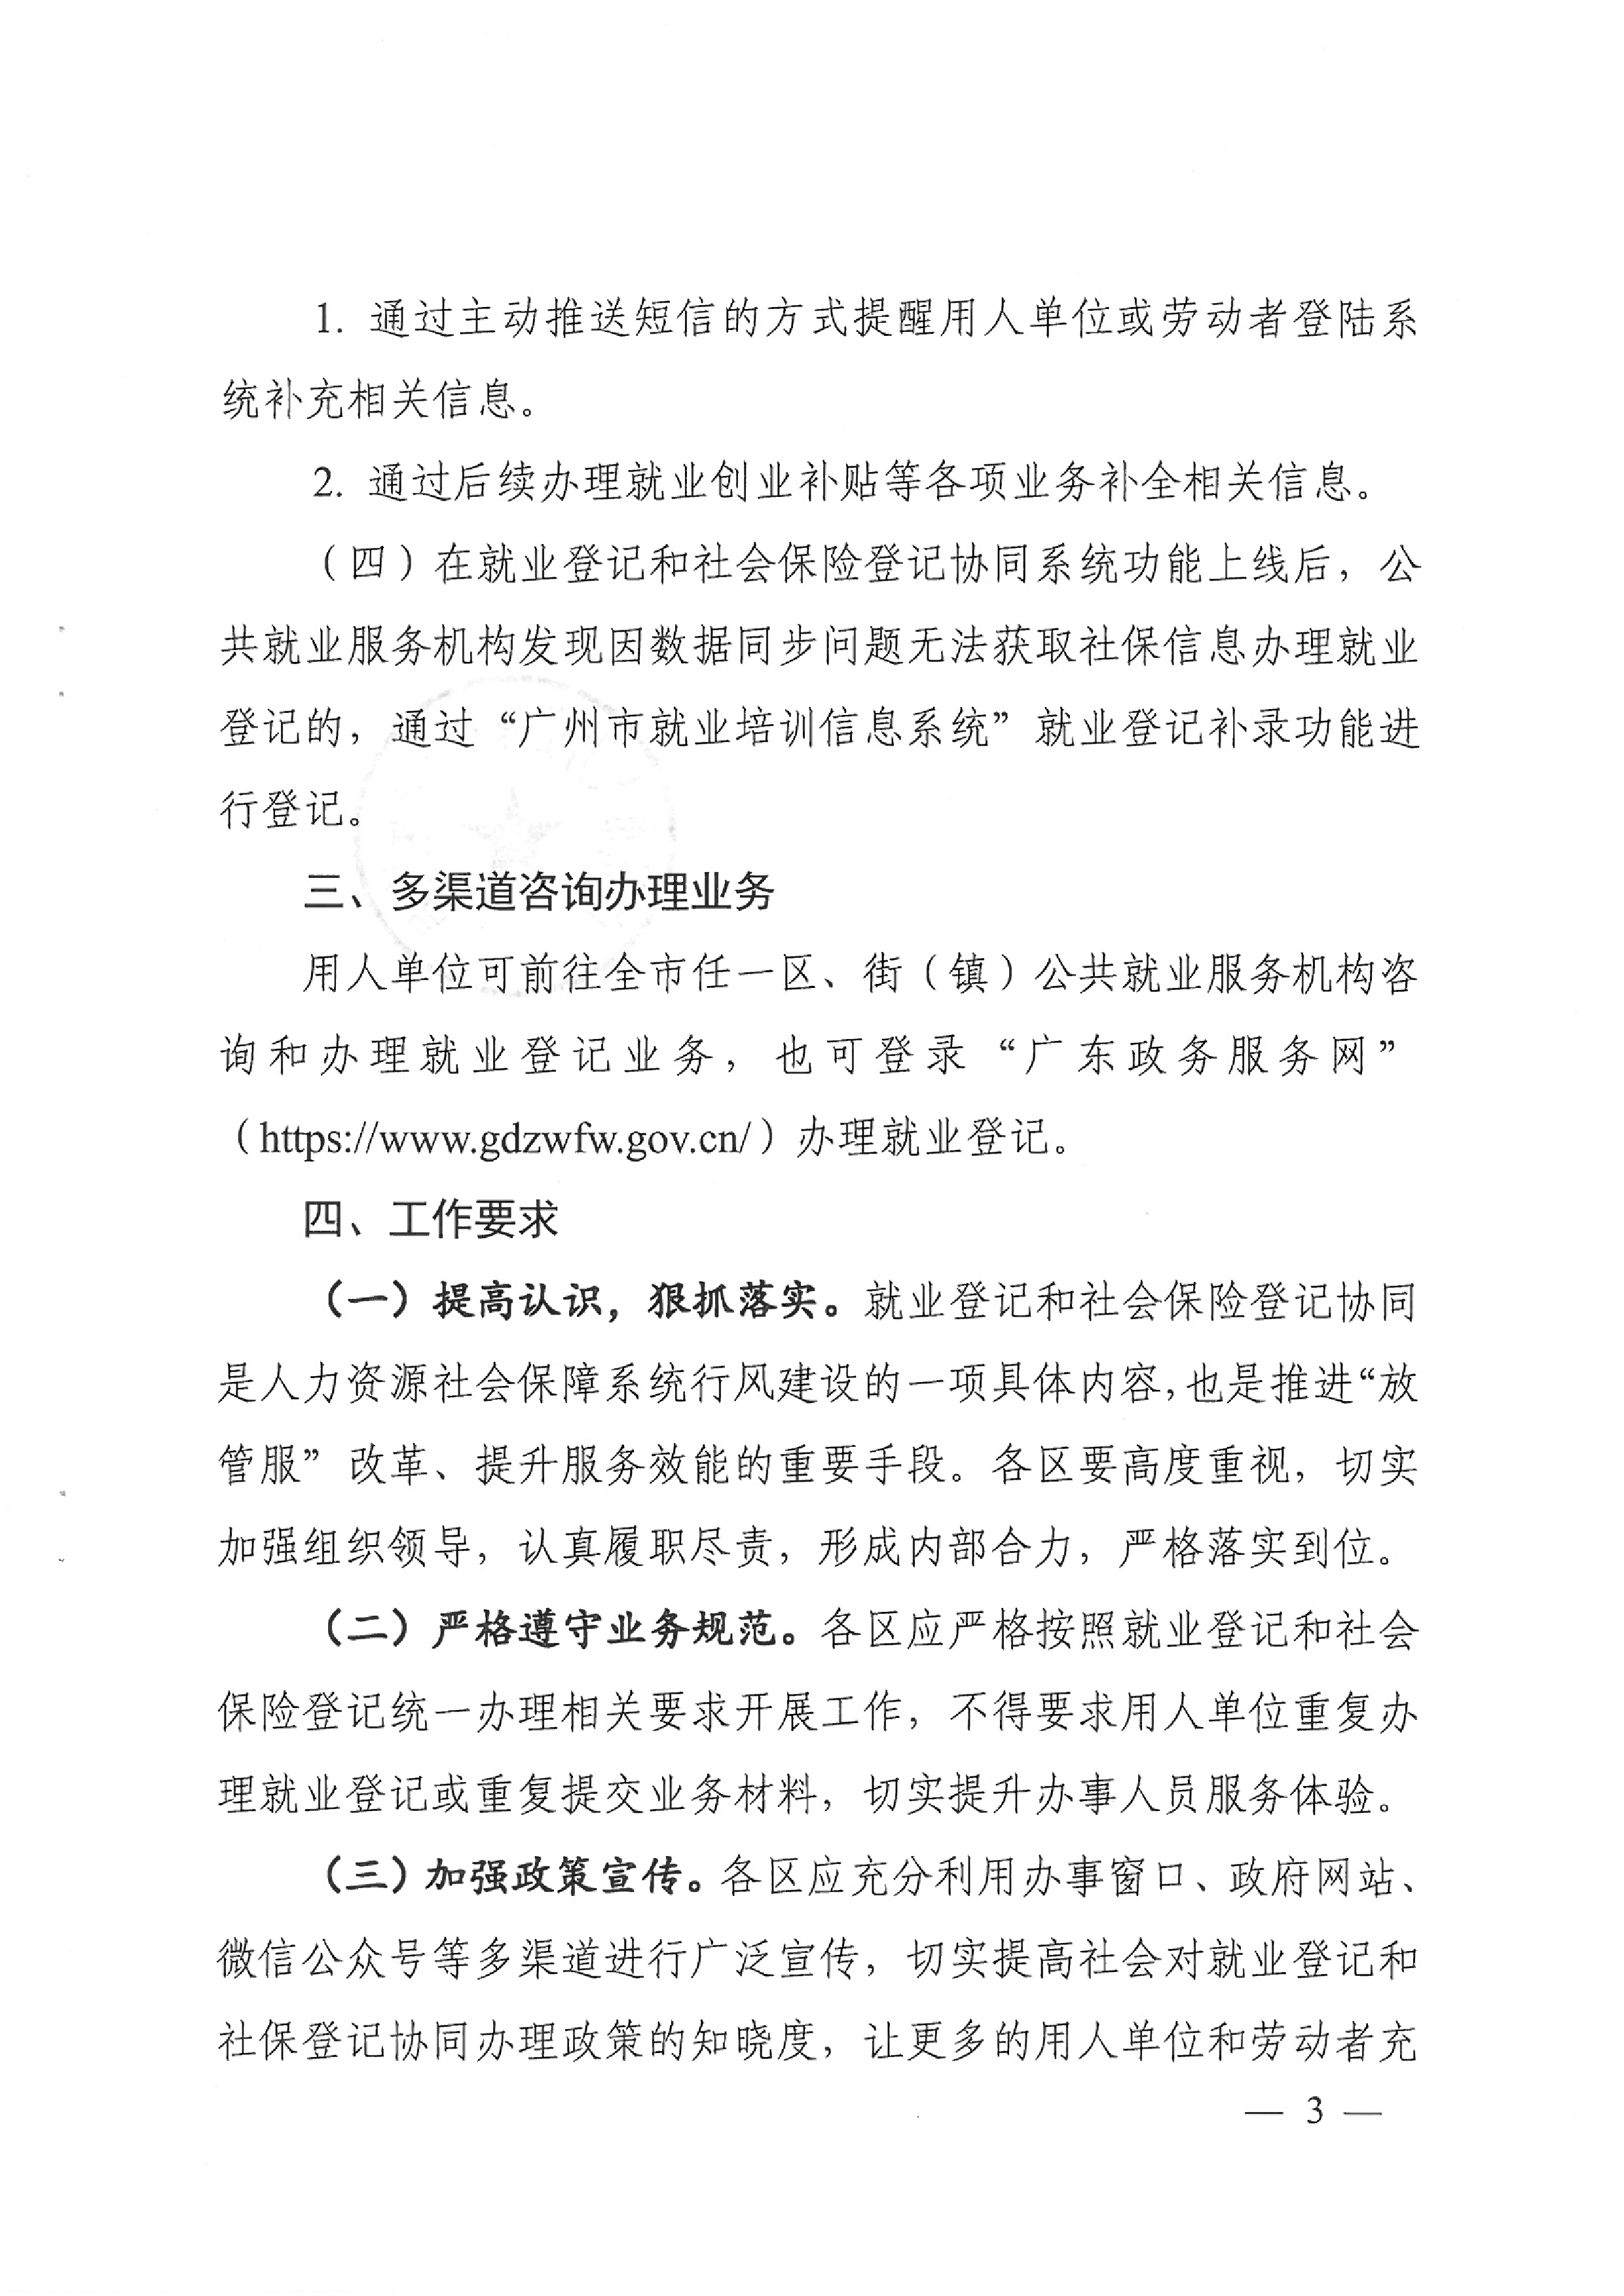 广州市人力资源和社会保障局关于统一做好就业登记和社会保险登记工作的通知（穗人社函〔2020〕750号）0002.jpg